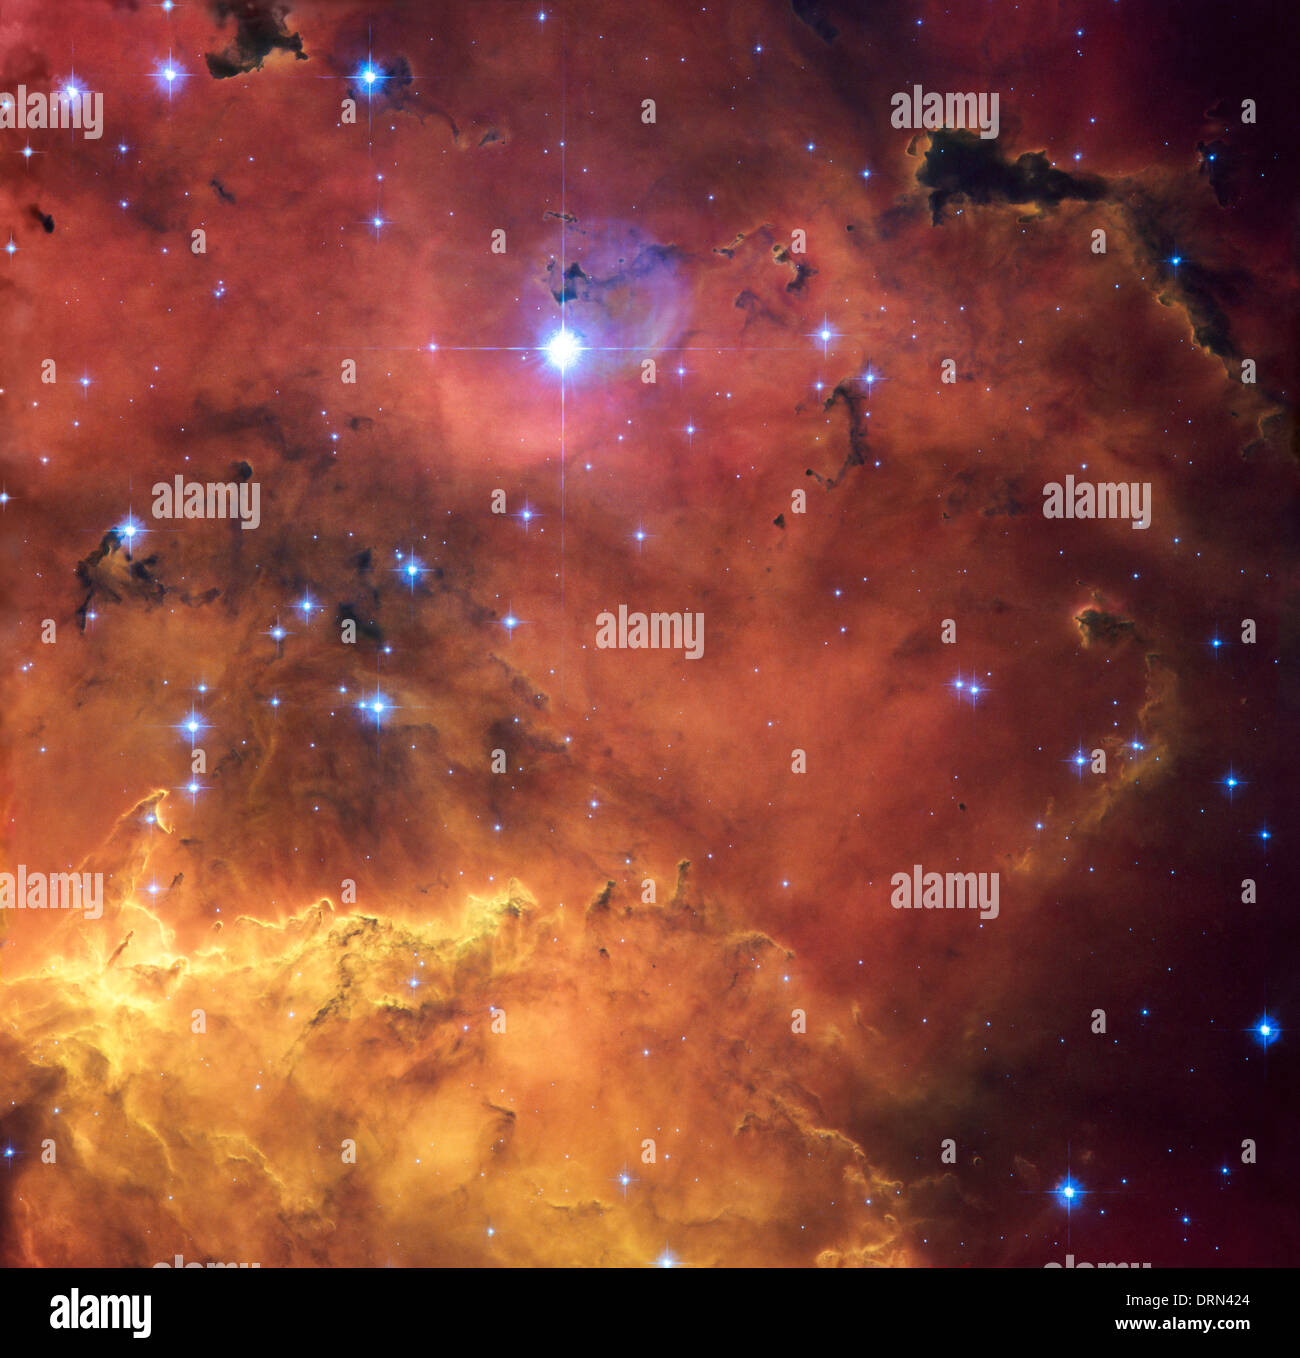 Una stella colorata regione di formazione è presentato in questo fantastico nuovo NASA/ESA Hubble Space Telescope Immagine di NGC 2467. Foto Stock